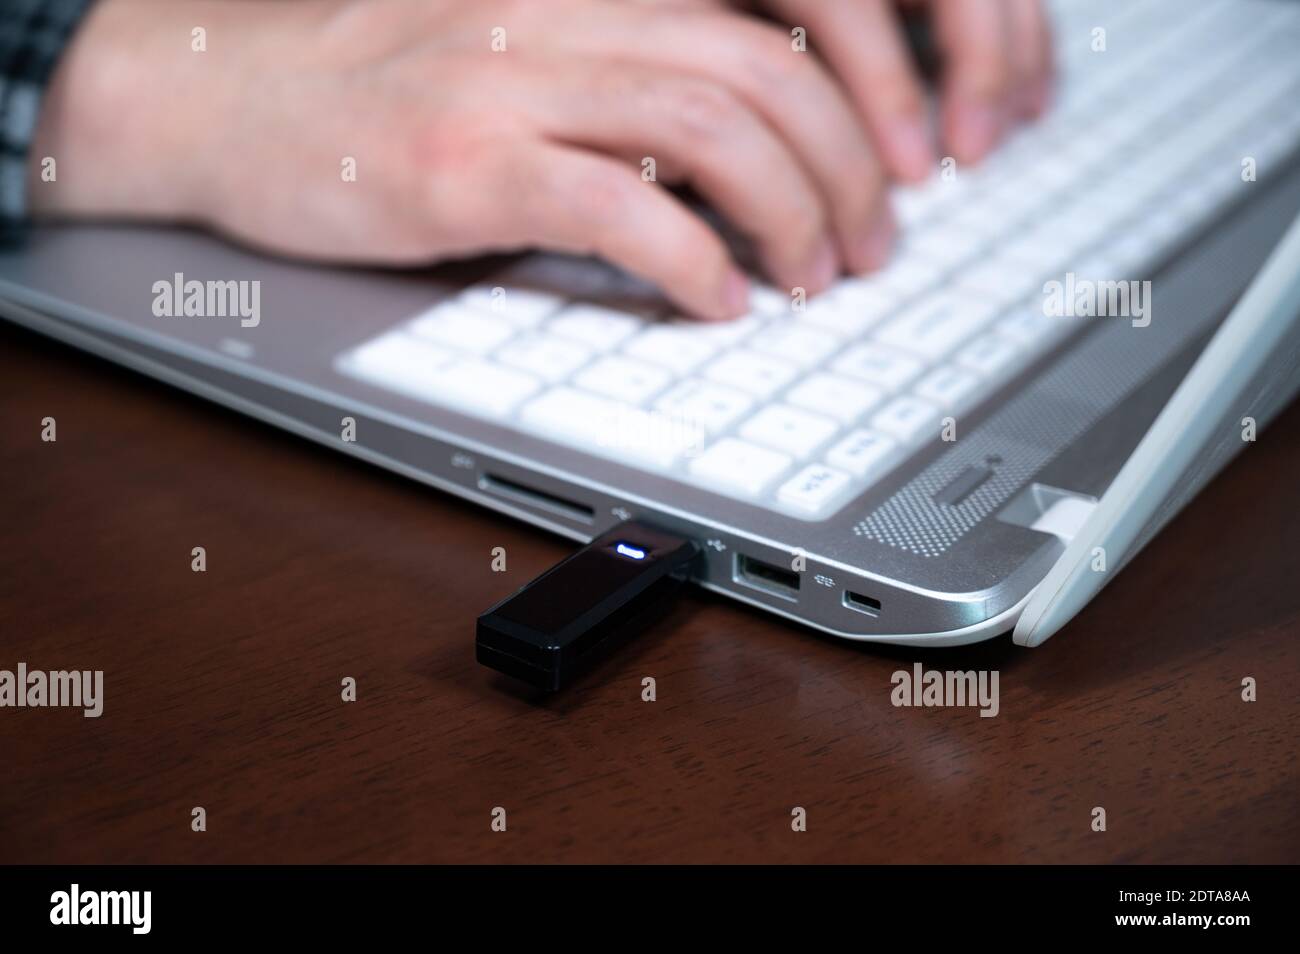 La main d'une personne utilisant une clé USB. Concept de protection des informations cybernétiques. Mise au point de sélection USB. Banque D'Images